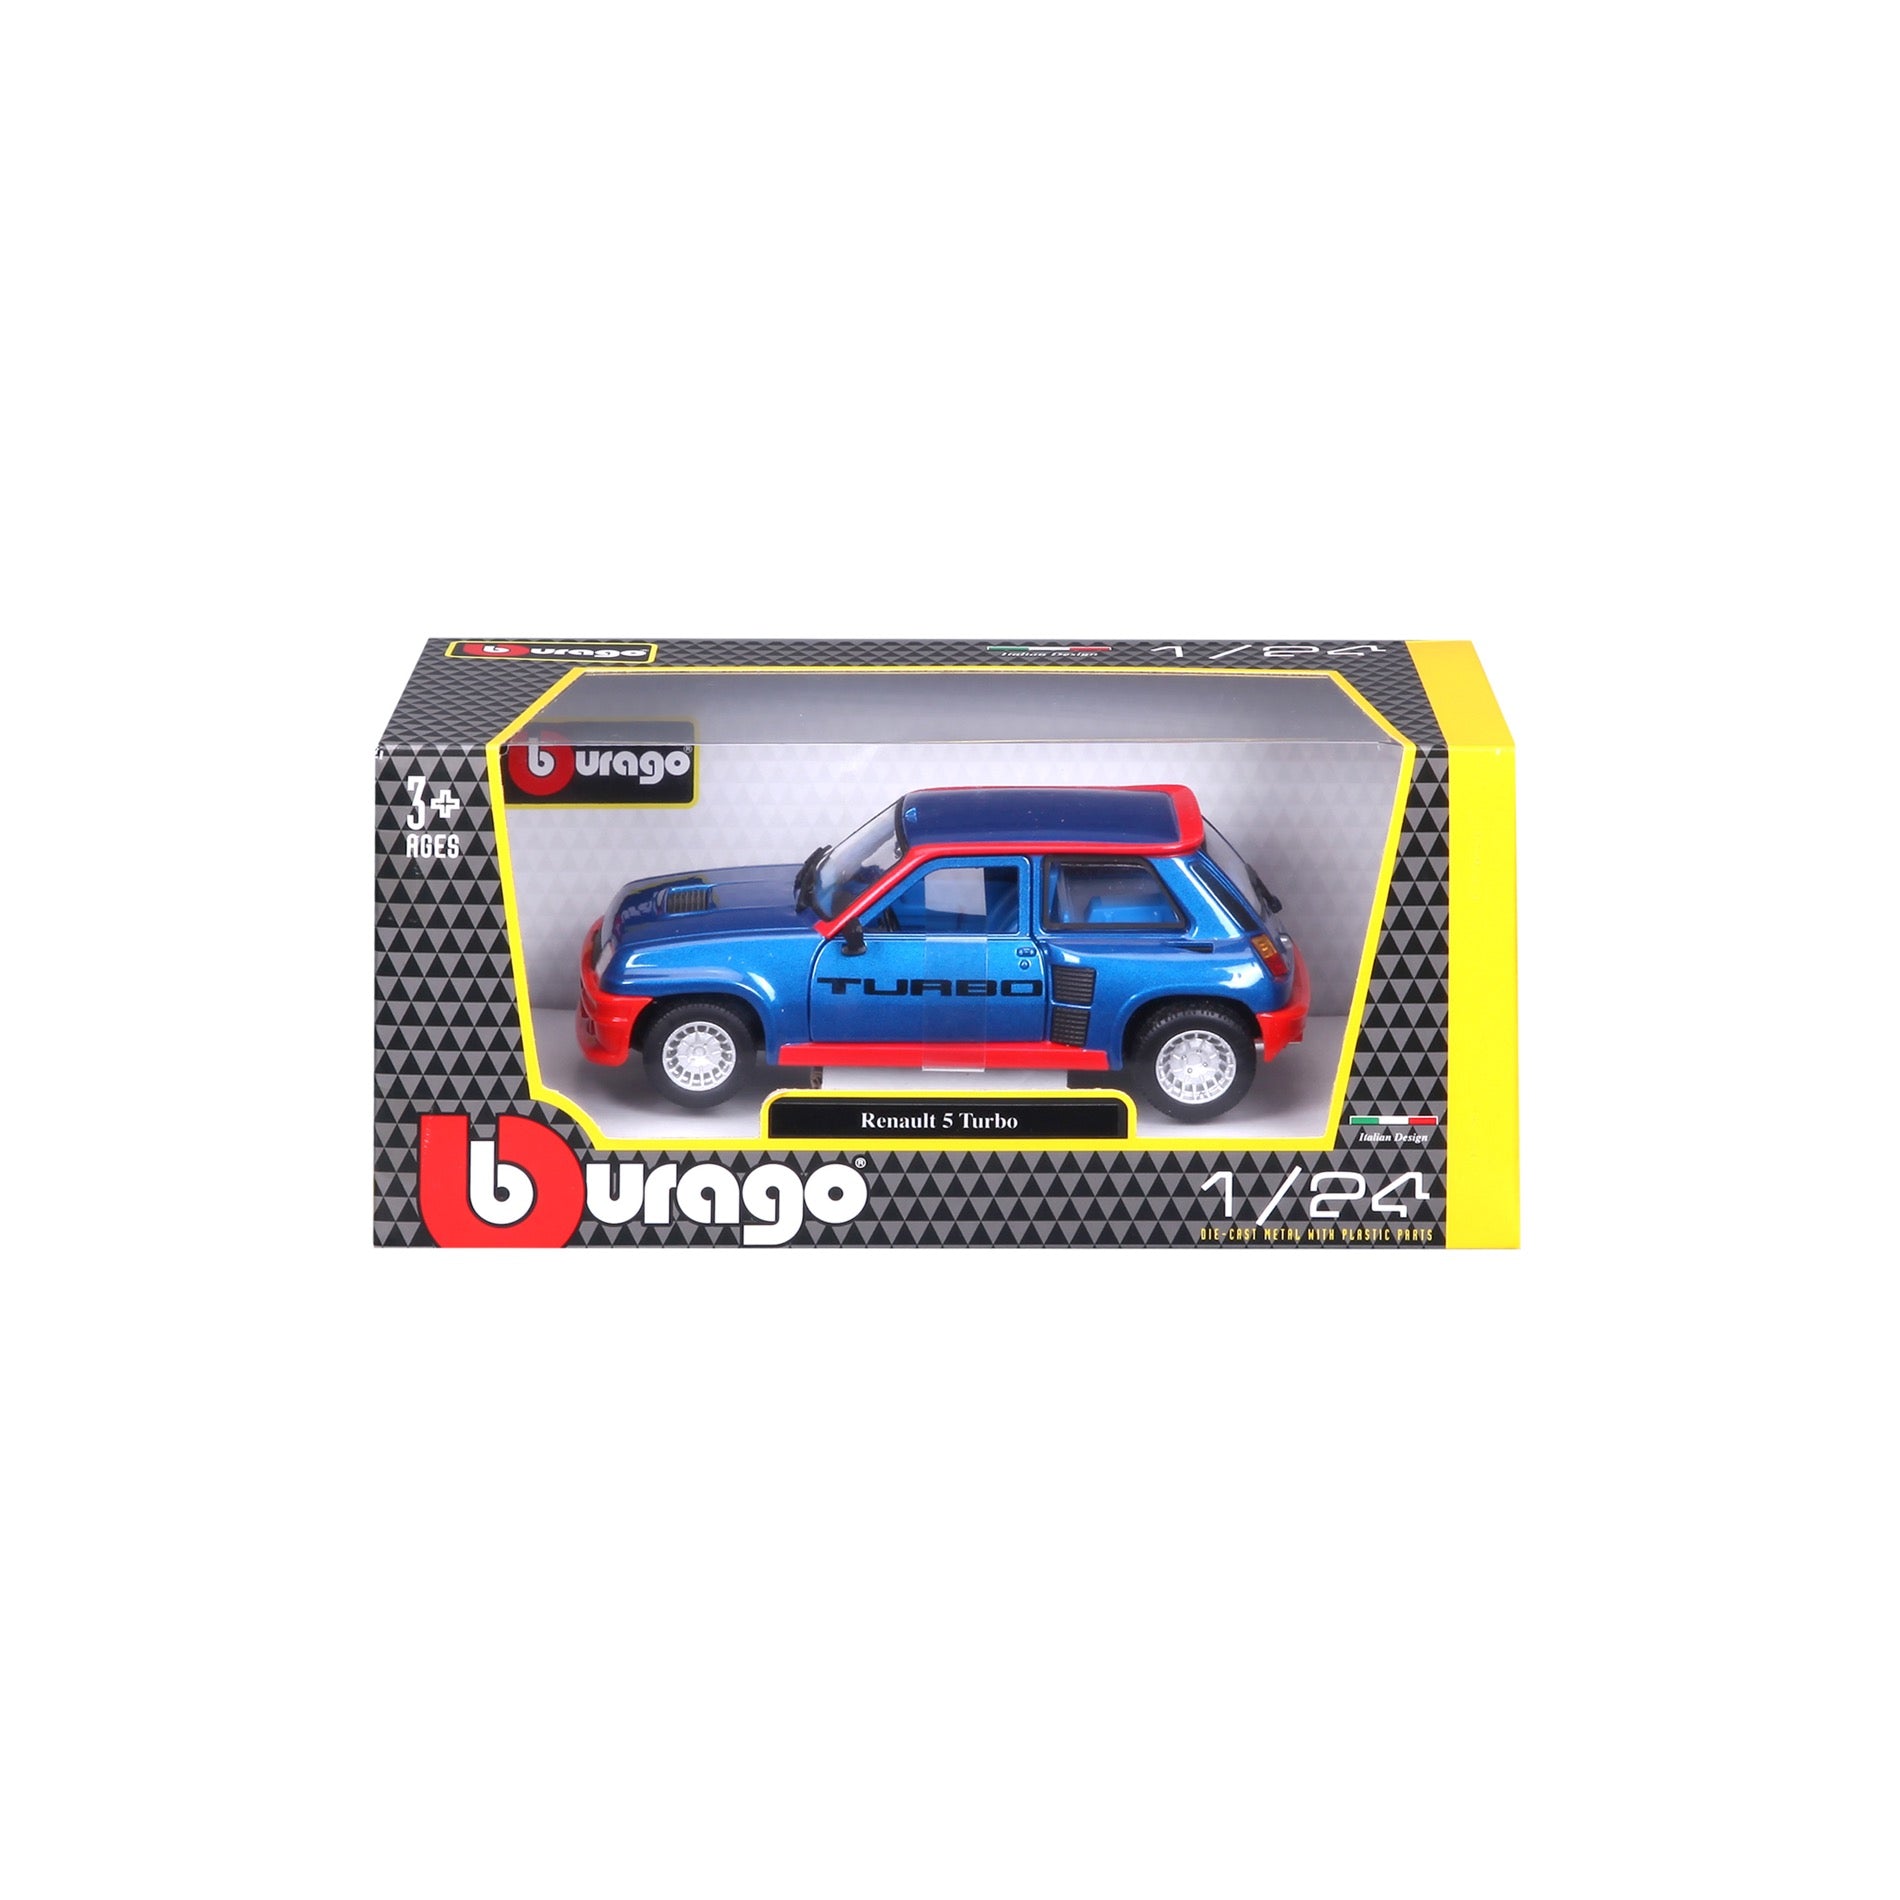 18-21088 BU Bburago 1:24 Collezione - Renault 5 Turbo Blue/Red